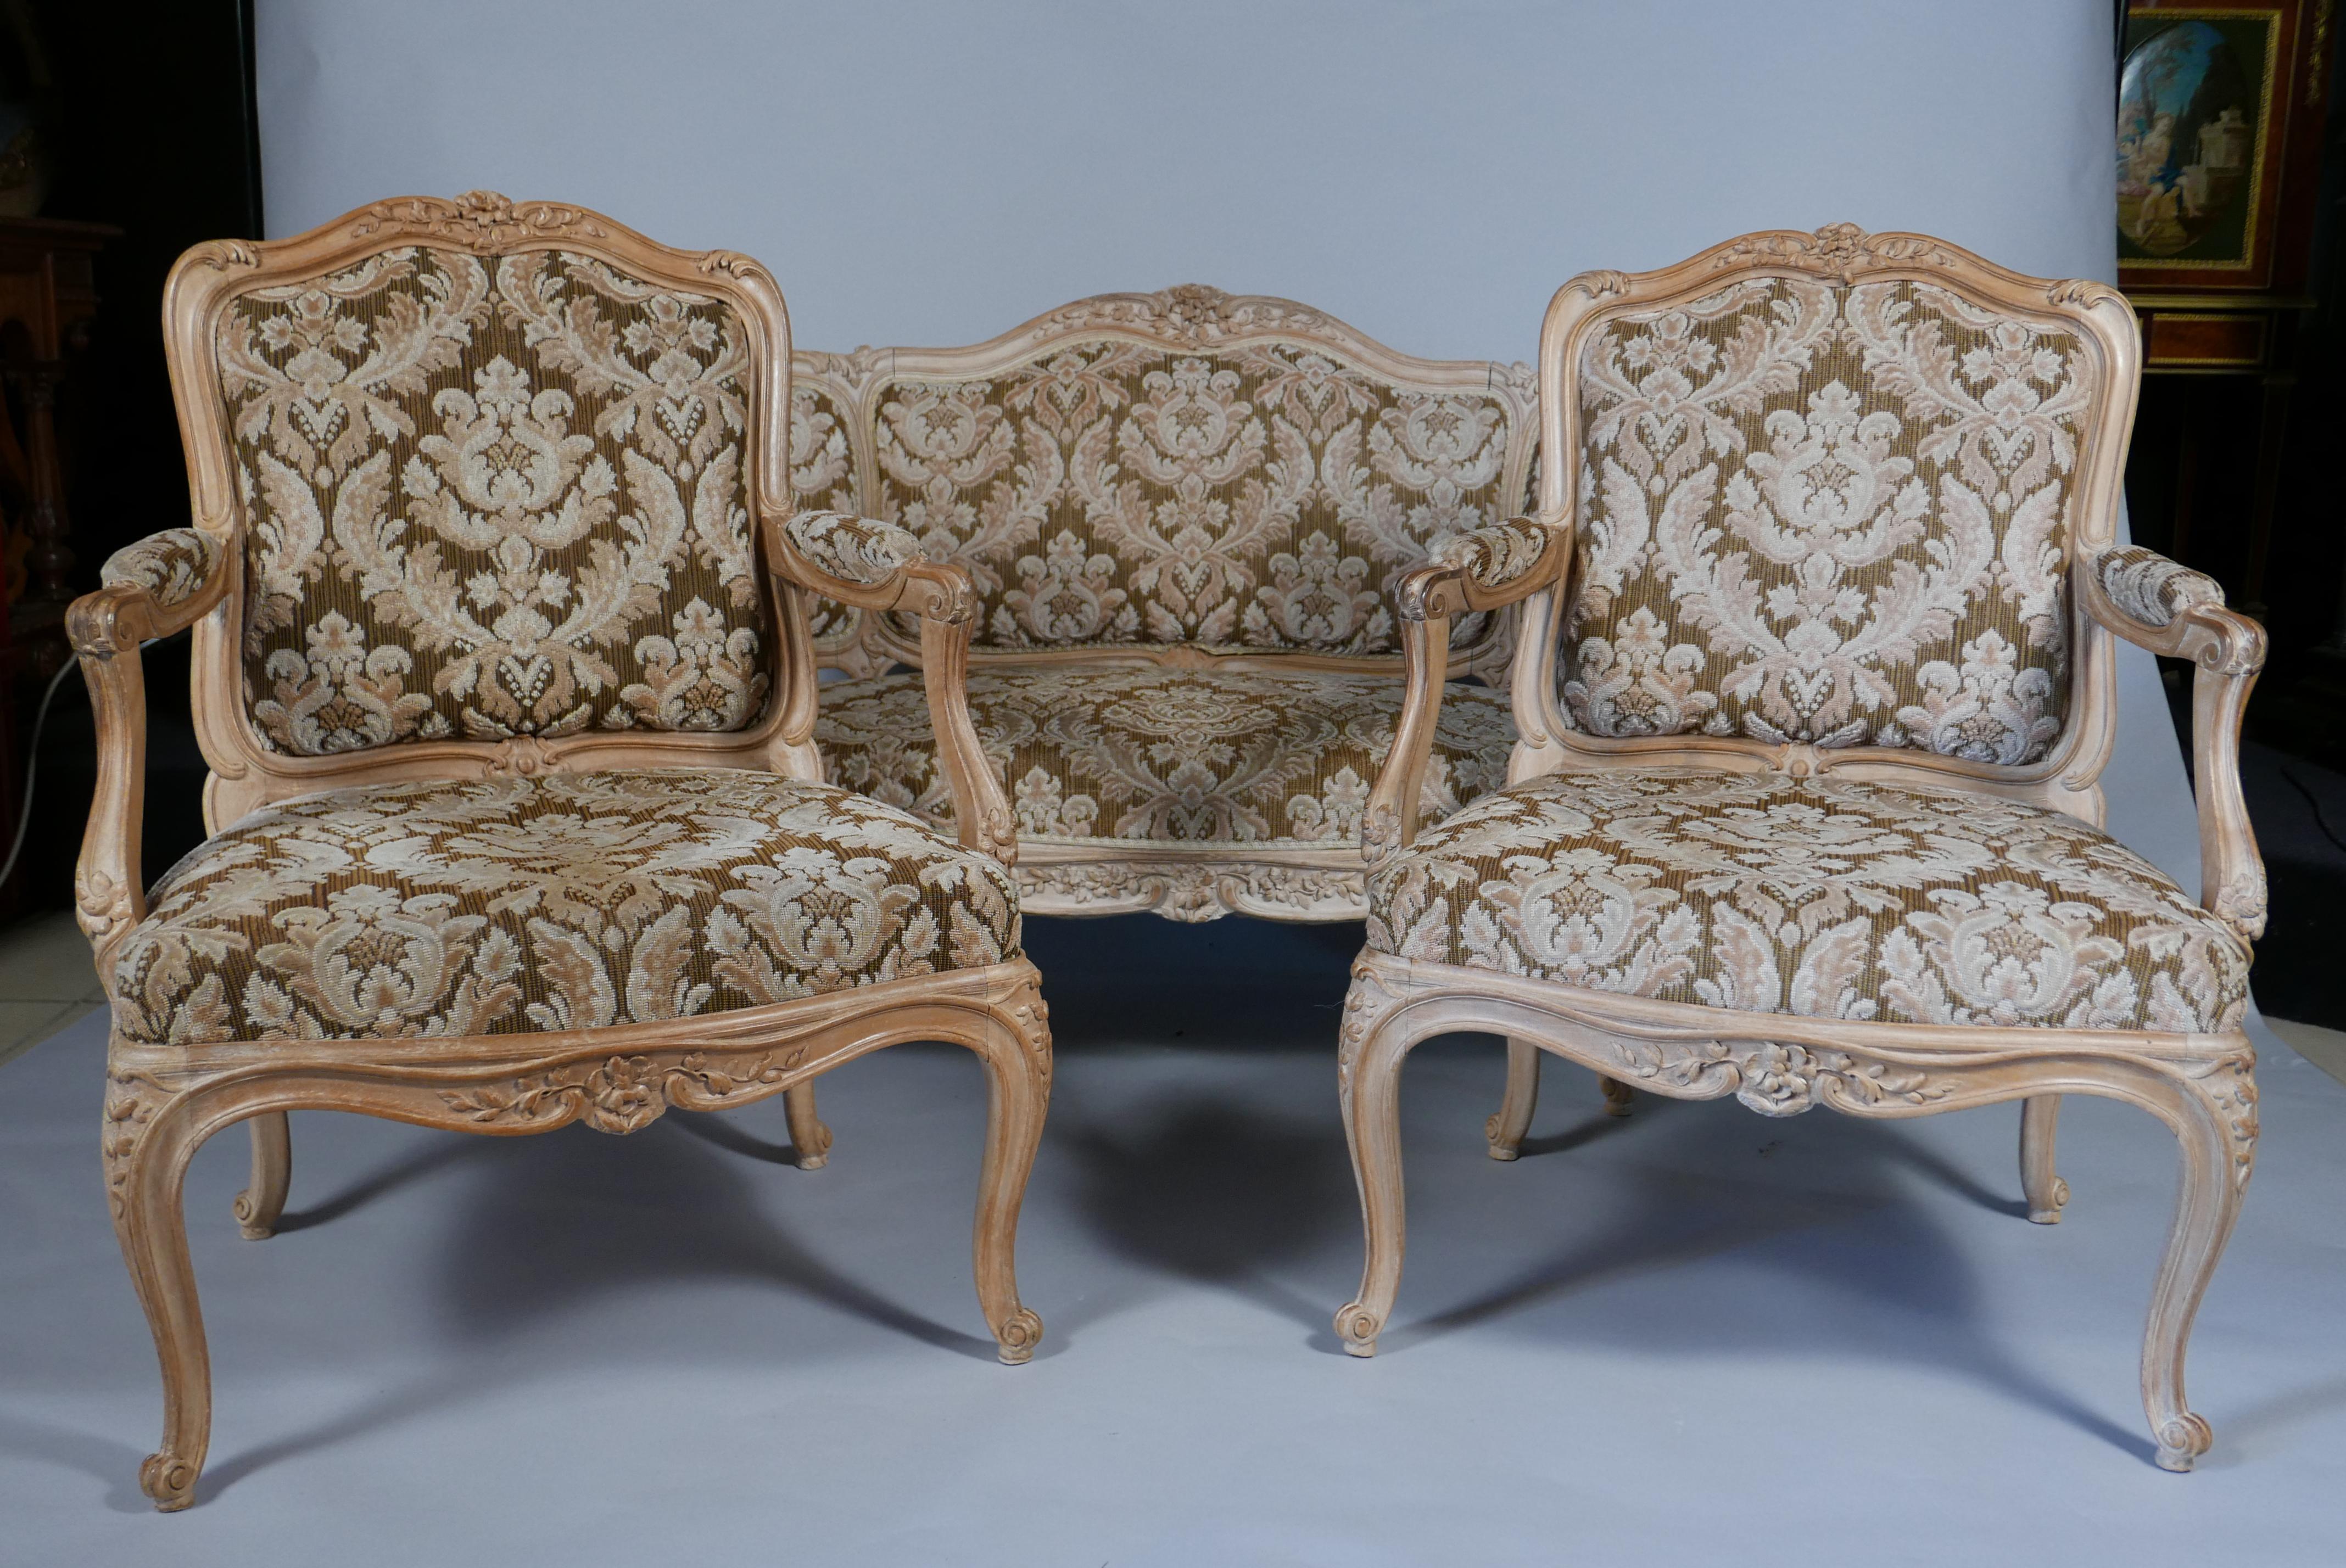 Sofa = Höhe : 100 cm (39,3 in.) ; Länge : 130 cm (51,2 in.) ; Tiefe : 53 cm (20,8 in.) 
Sessel = Höhe : 100 cm (39,3 in.) ; Breite : 71 cm (27,9 in.) ; Tiefe : 57 cm (22,4 in.)

Charmante Salongarnitur im Stil Louis XV aus Naturholz, bestehend aus